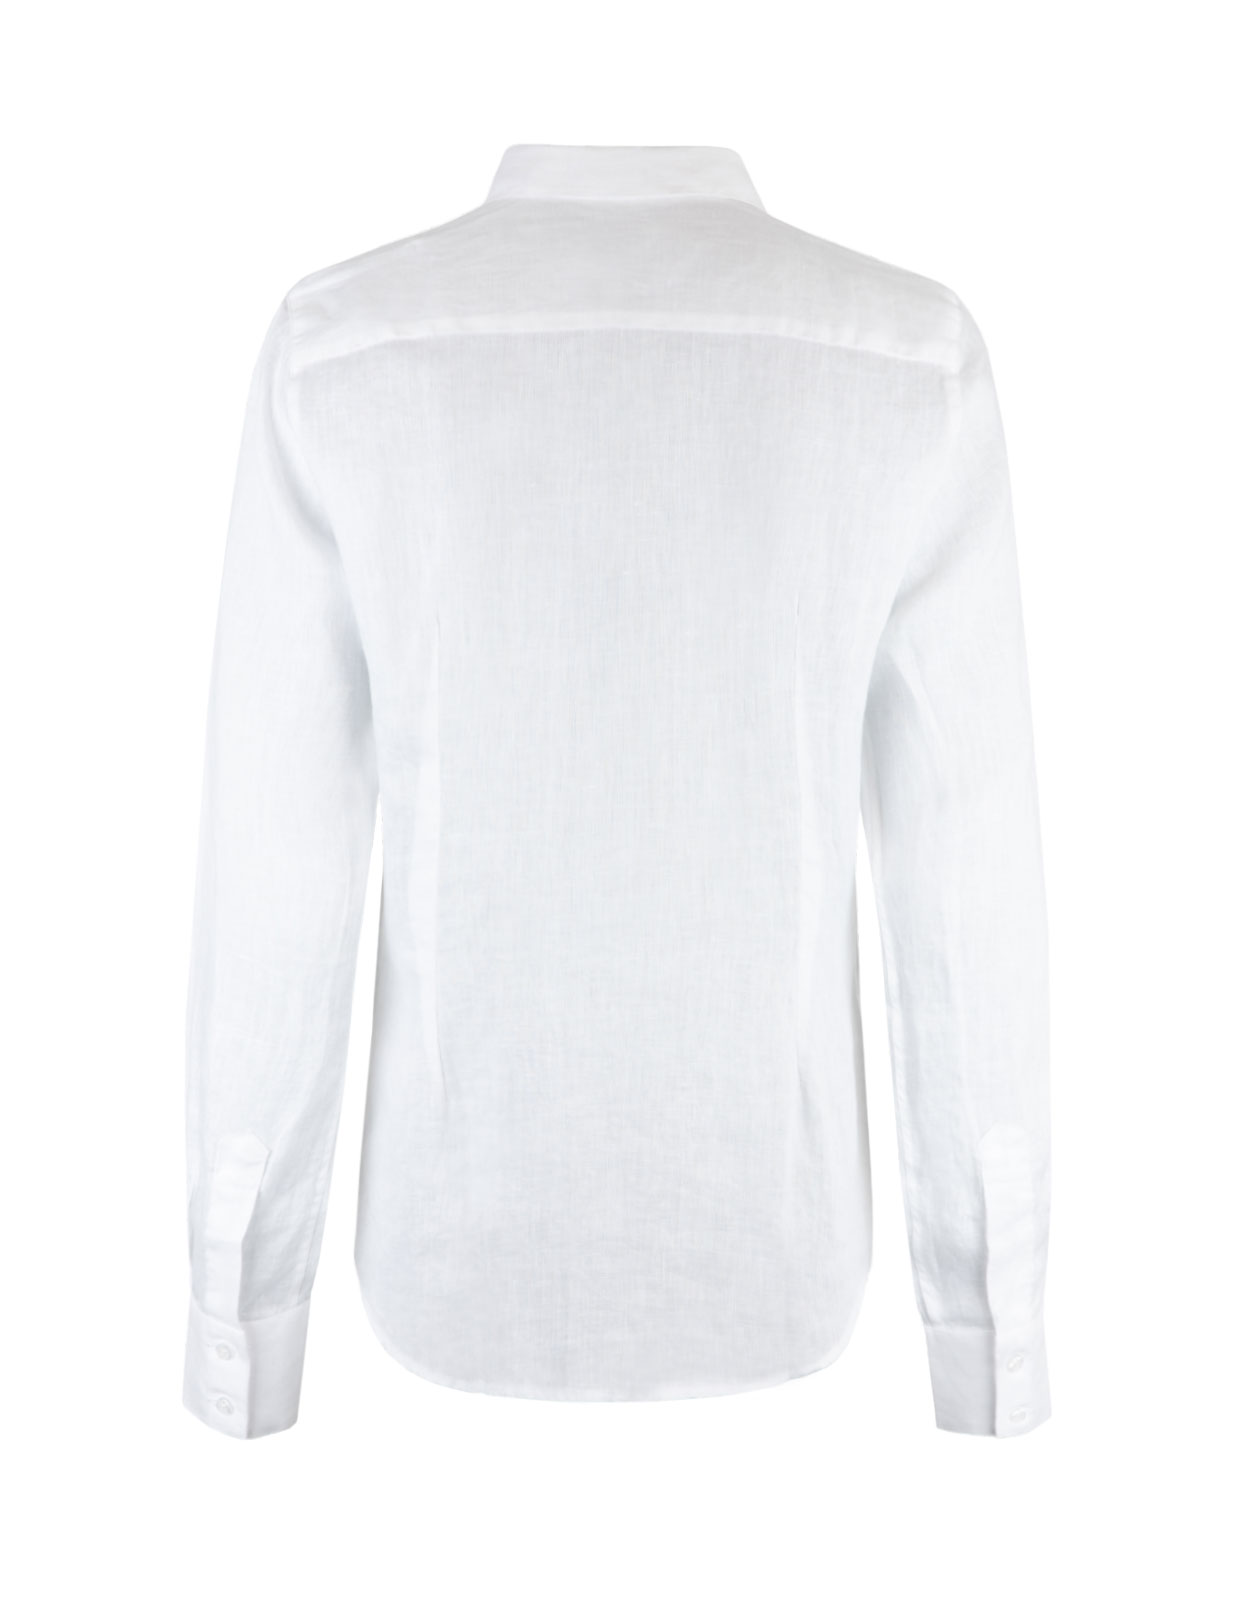 Linen Shirt Long Sleeve White